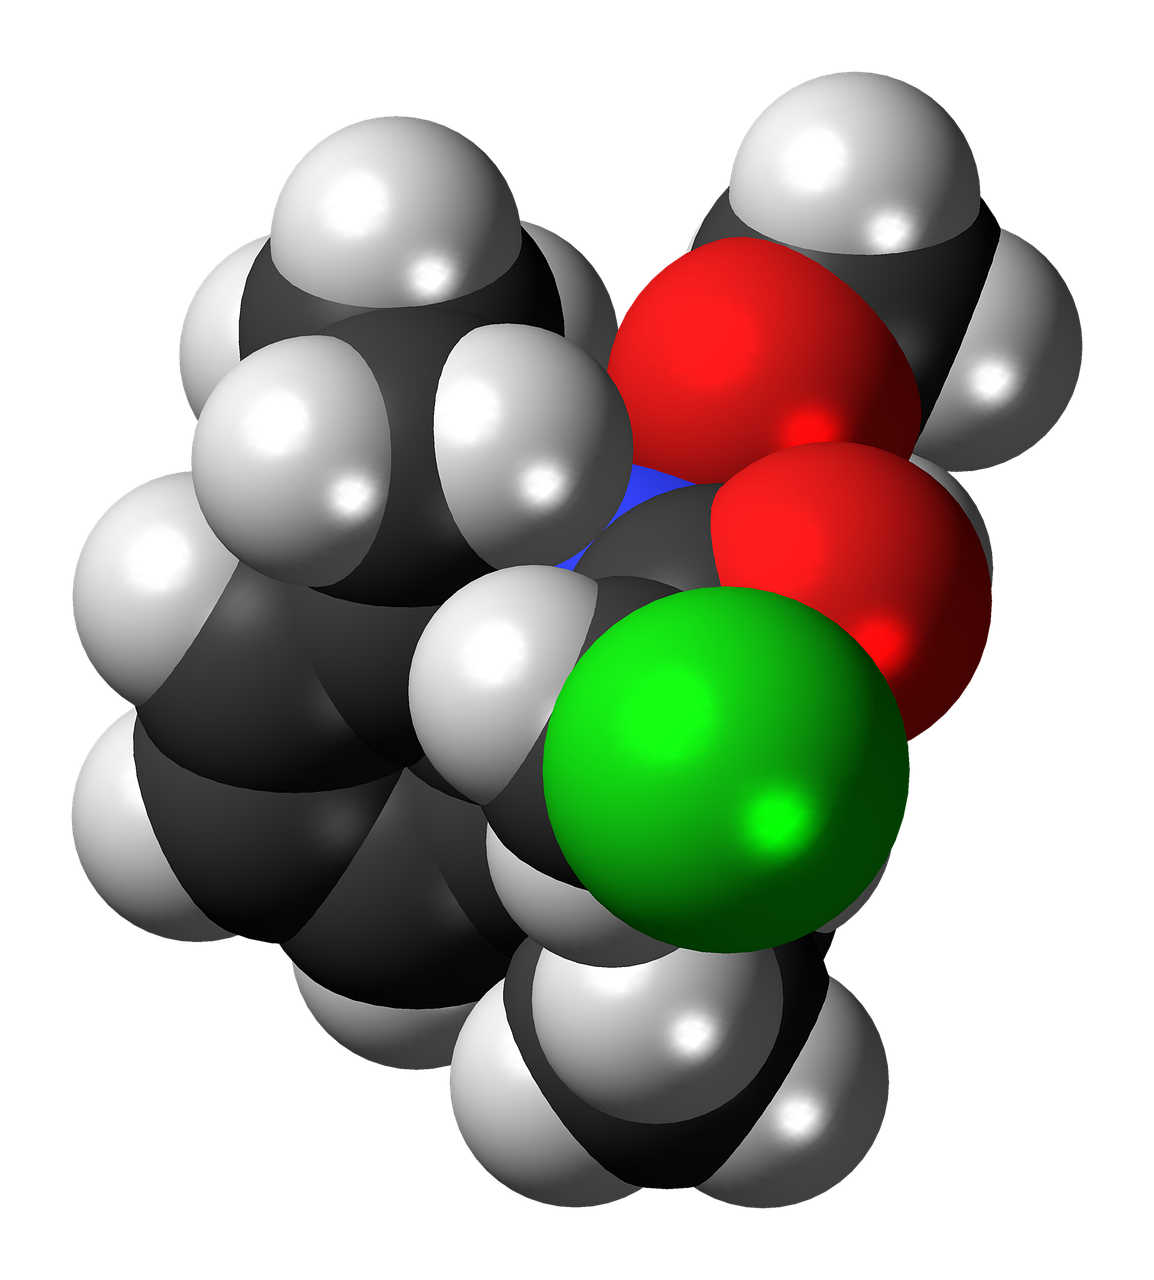 Alachloras, Herbicidas, Molekulė, Modelis, Chemija, Mokslas, Junginys, Tyrimai, Atomai, Bondings